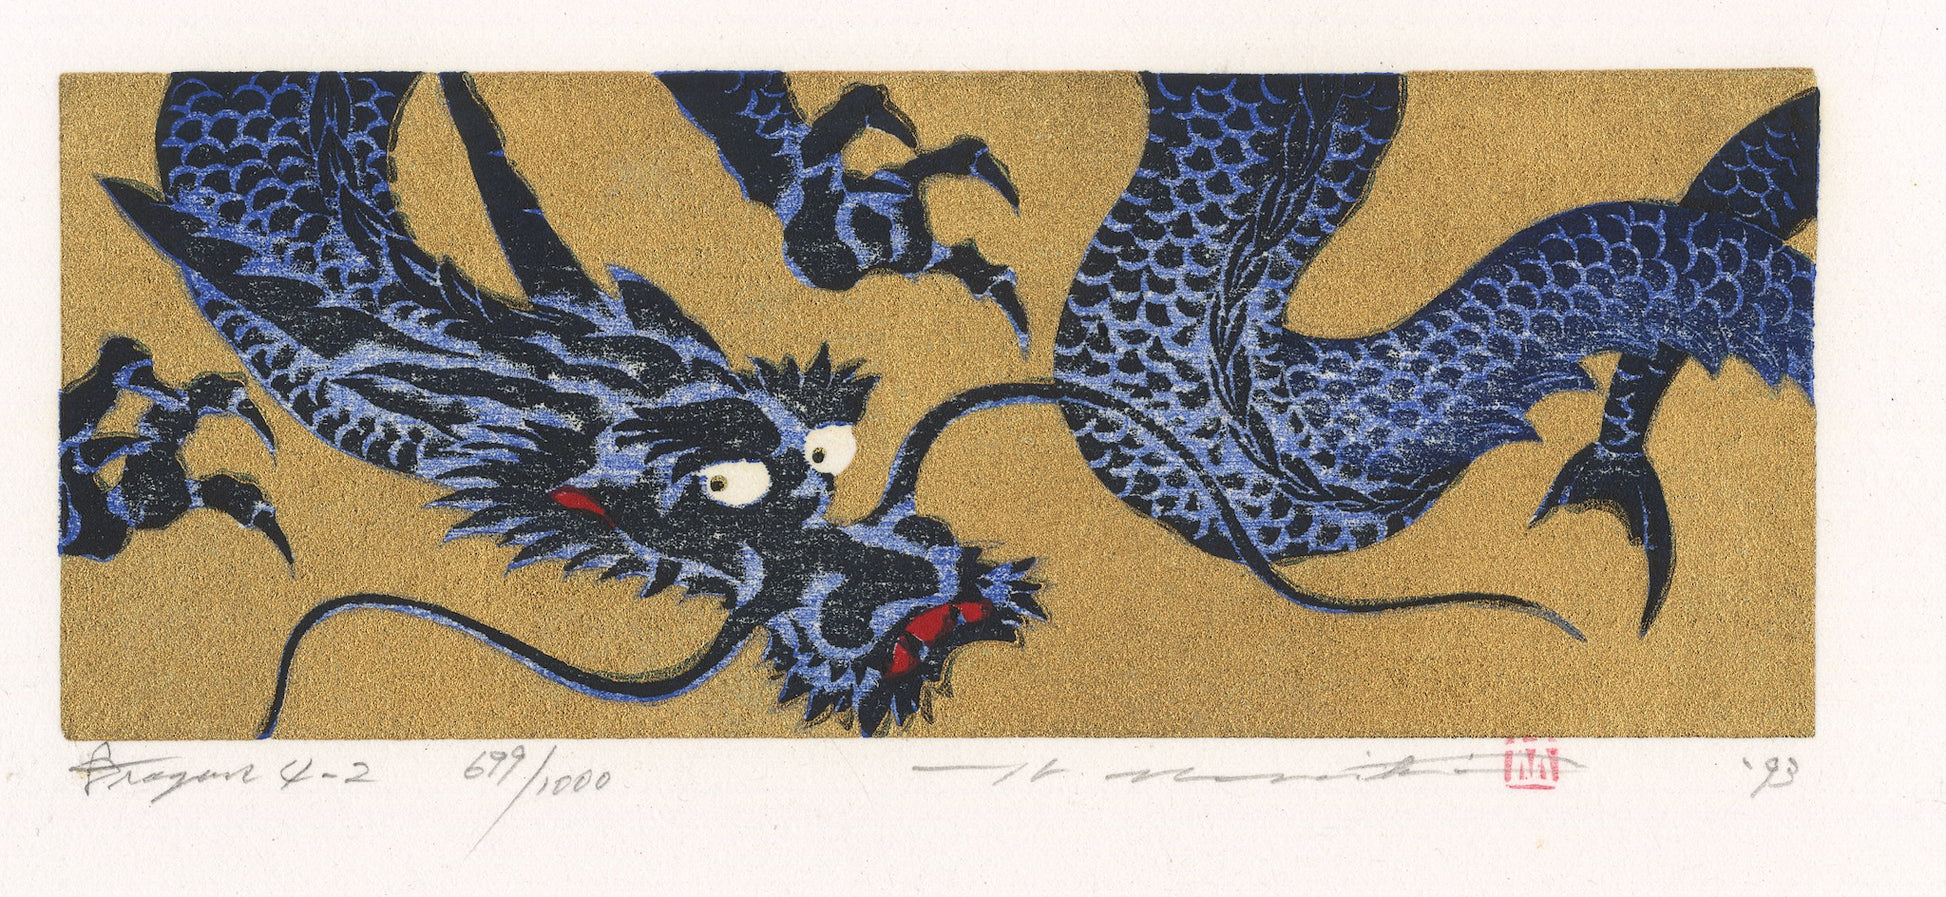 estampe japonaise dragon bleu gueule fermée sur fond or